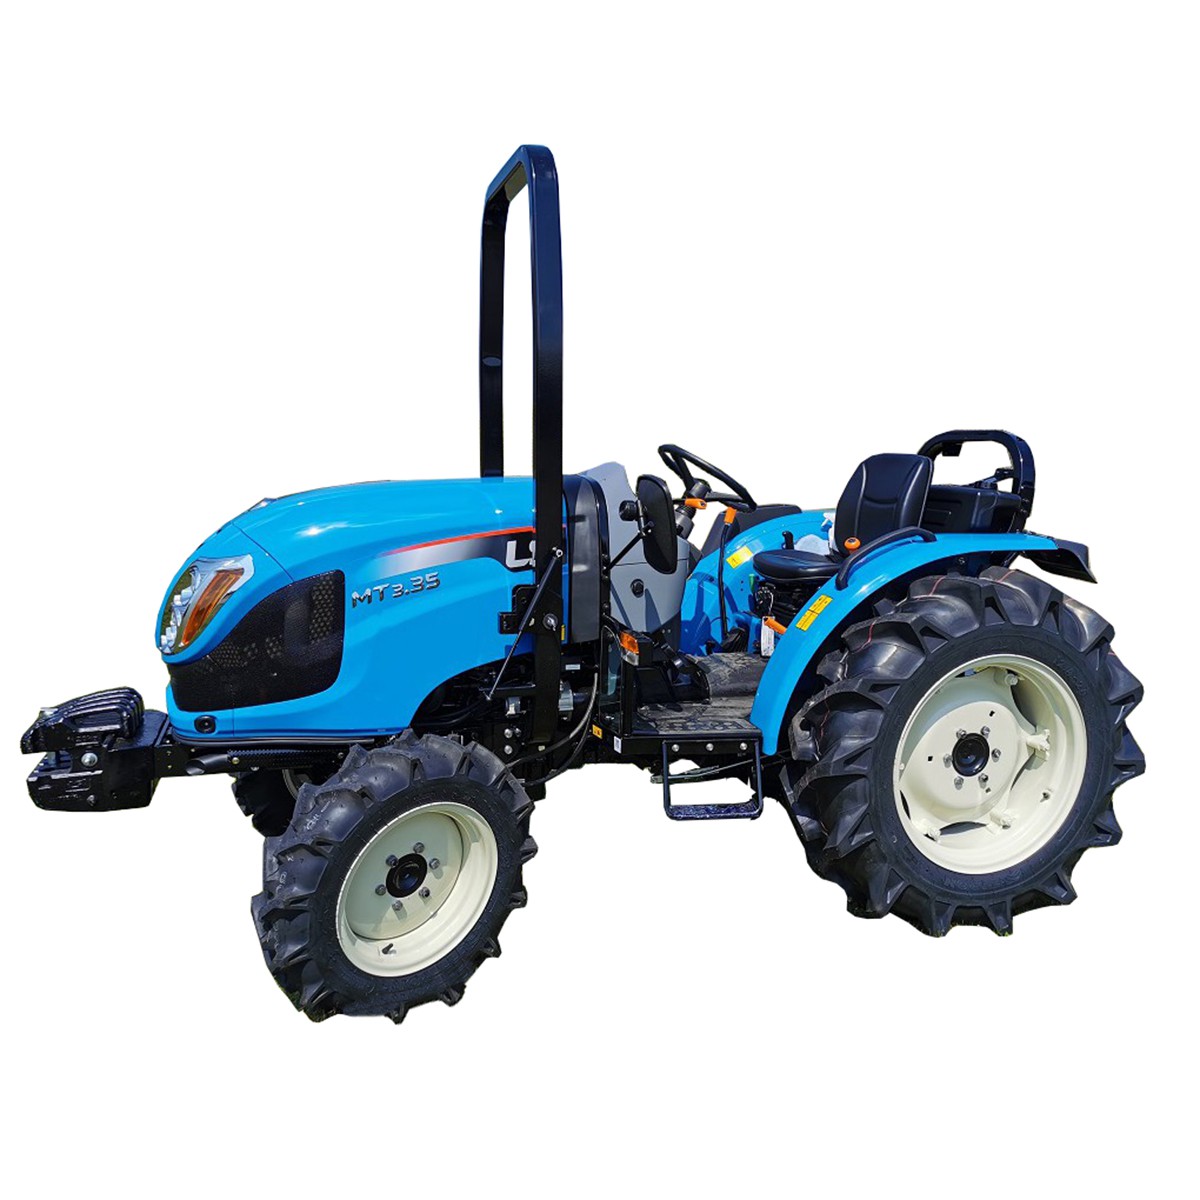 LS-Traktor MT3.50 MEC 4x4 - 47 PS